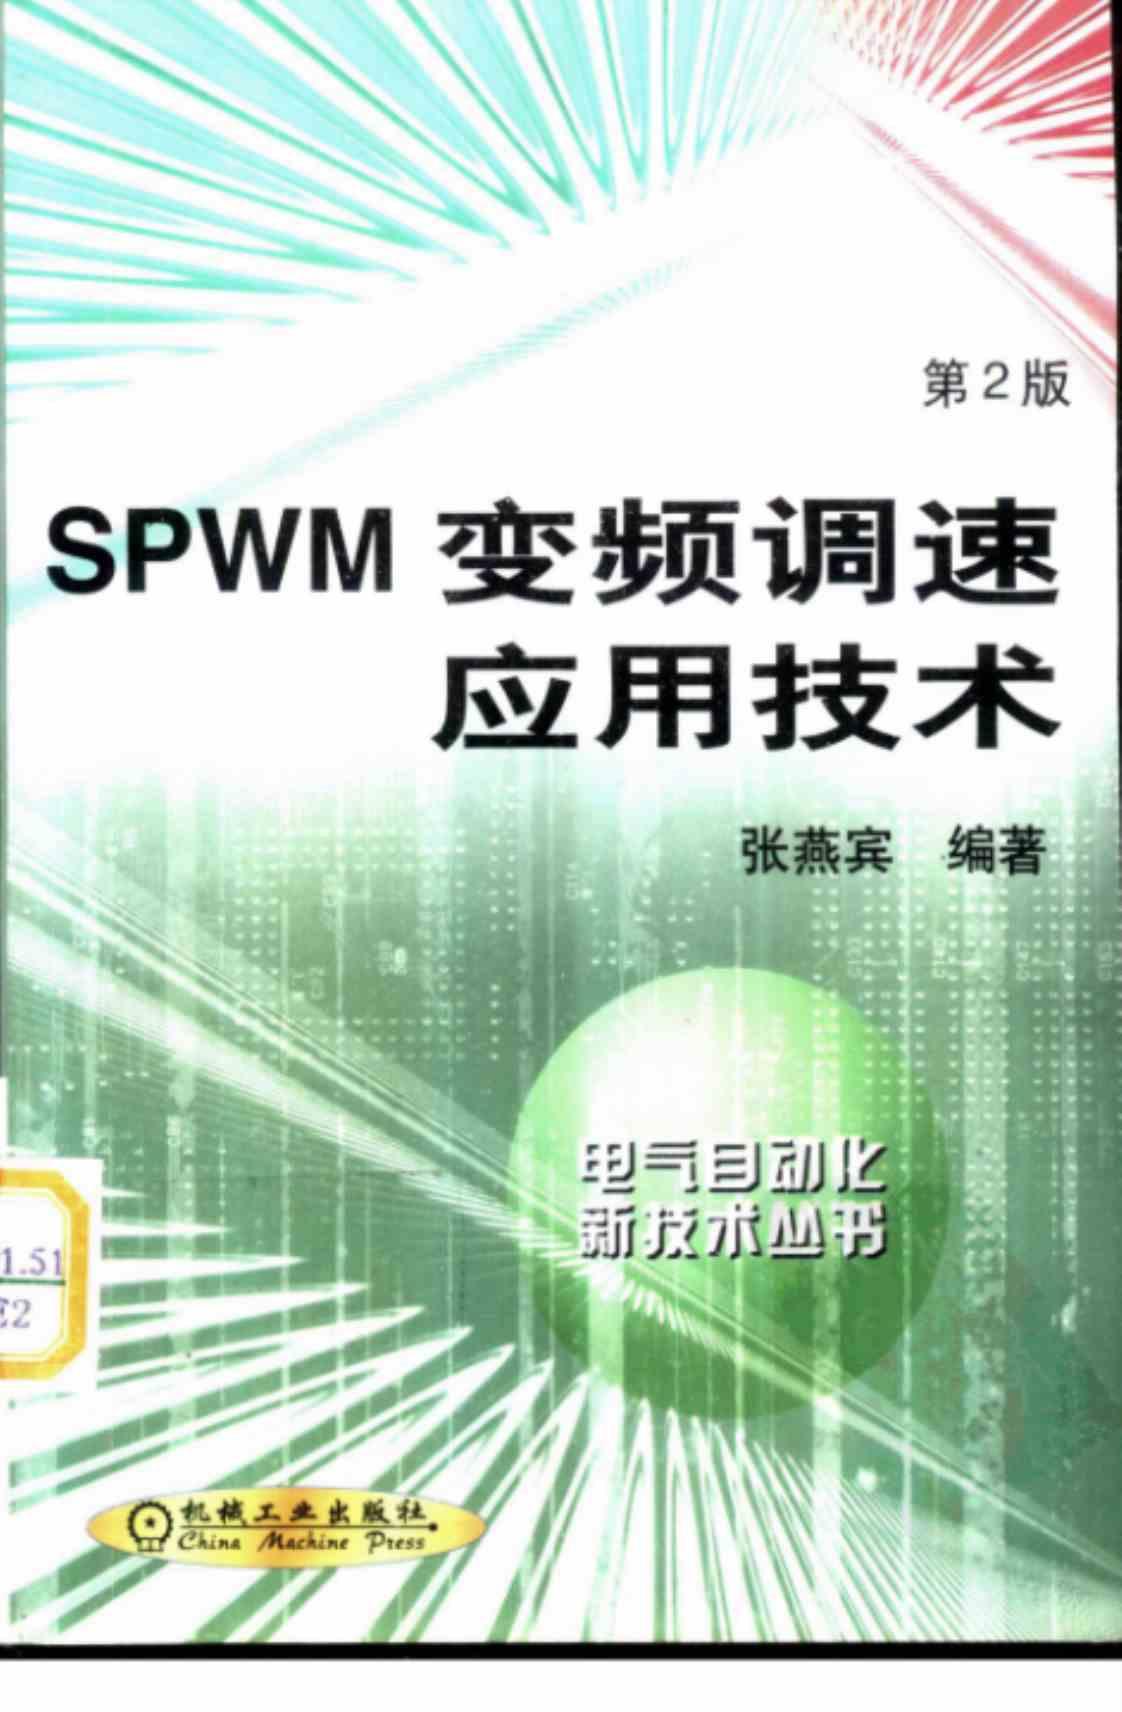 [SPWM变频调速应用技术][张燕宾（编著）]高清PDF电子书